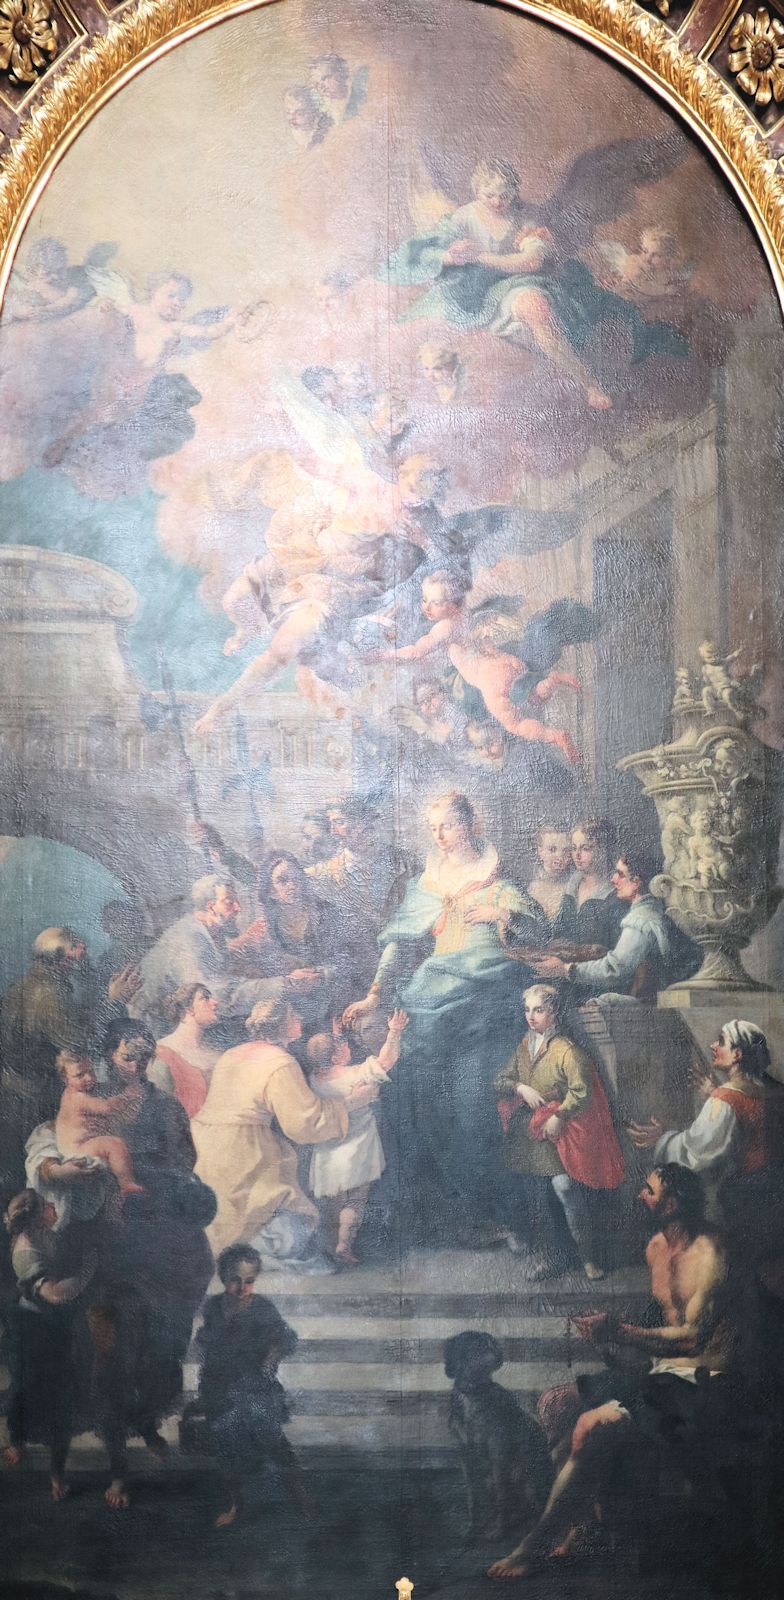 Daniel Gran: Elisabeth verteilt Almosen, Altarbild, 1736/1737, in der Karlskirche in Wien